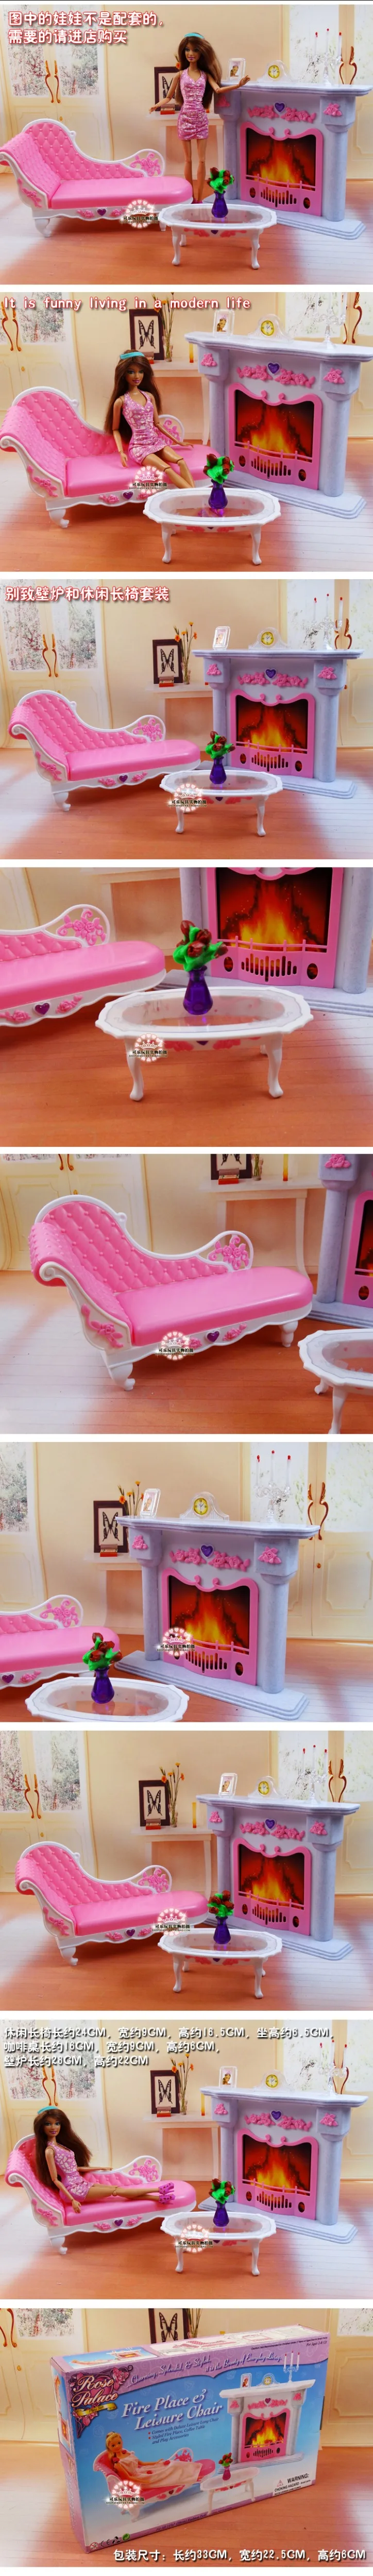 Оригинальная столовая посуда Барби ужин в ресторане комплект из стола и стула мечта 1/6 bjd Кукольный дом мебель аксессуары игрушка подарок